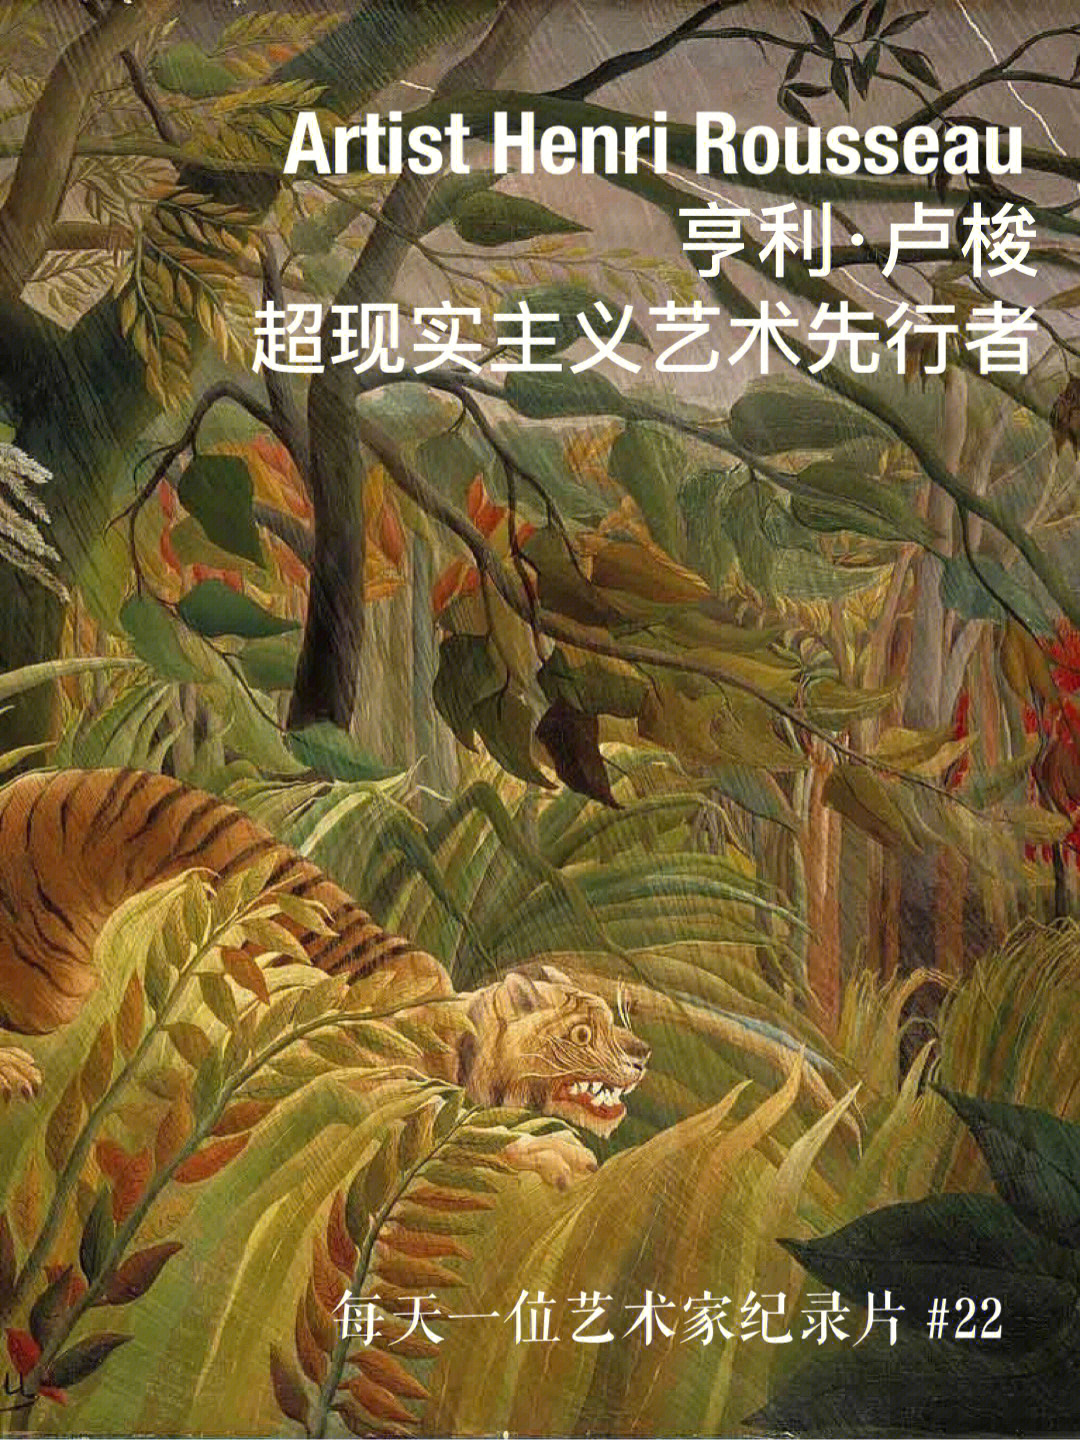 来自于1908年法国艺术大师亨利卢梭的作品在热带森林作战的老虎和